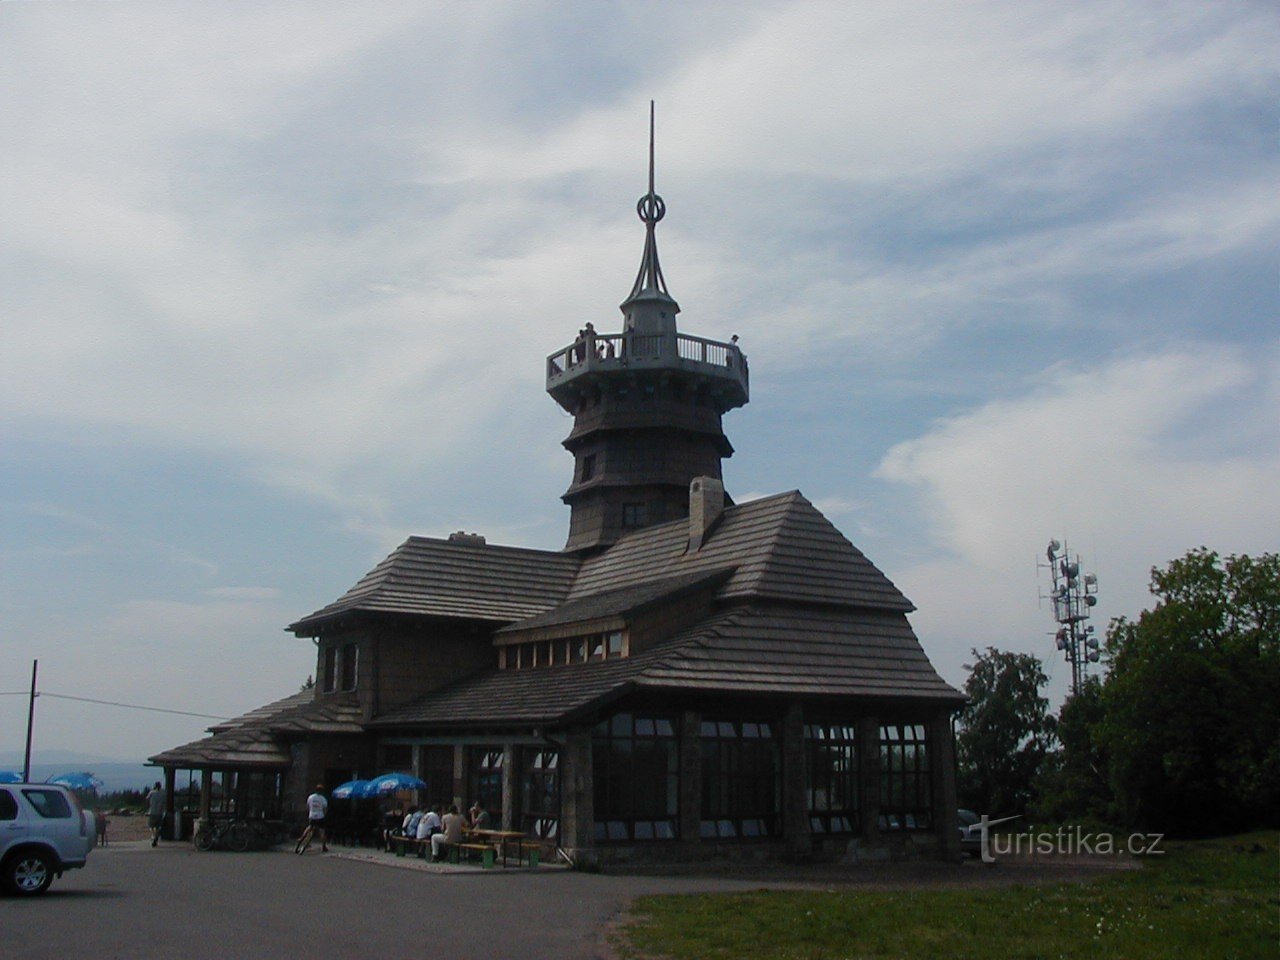 Wieża widokowa na Dobrošovie - chata Jiráskova